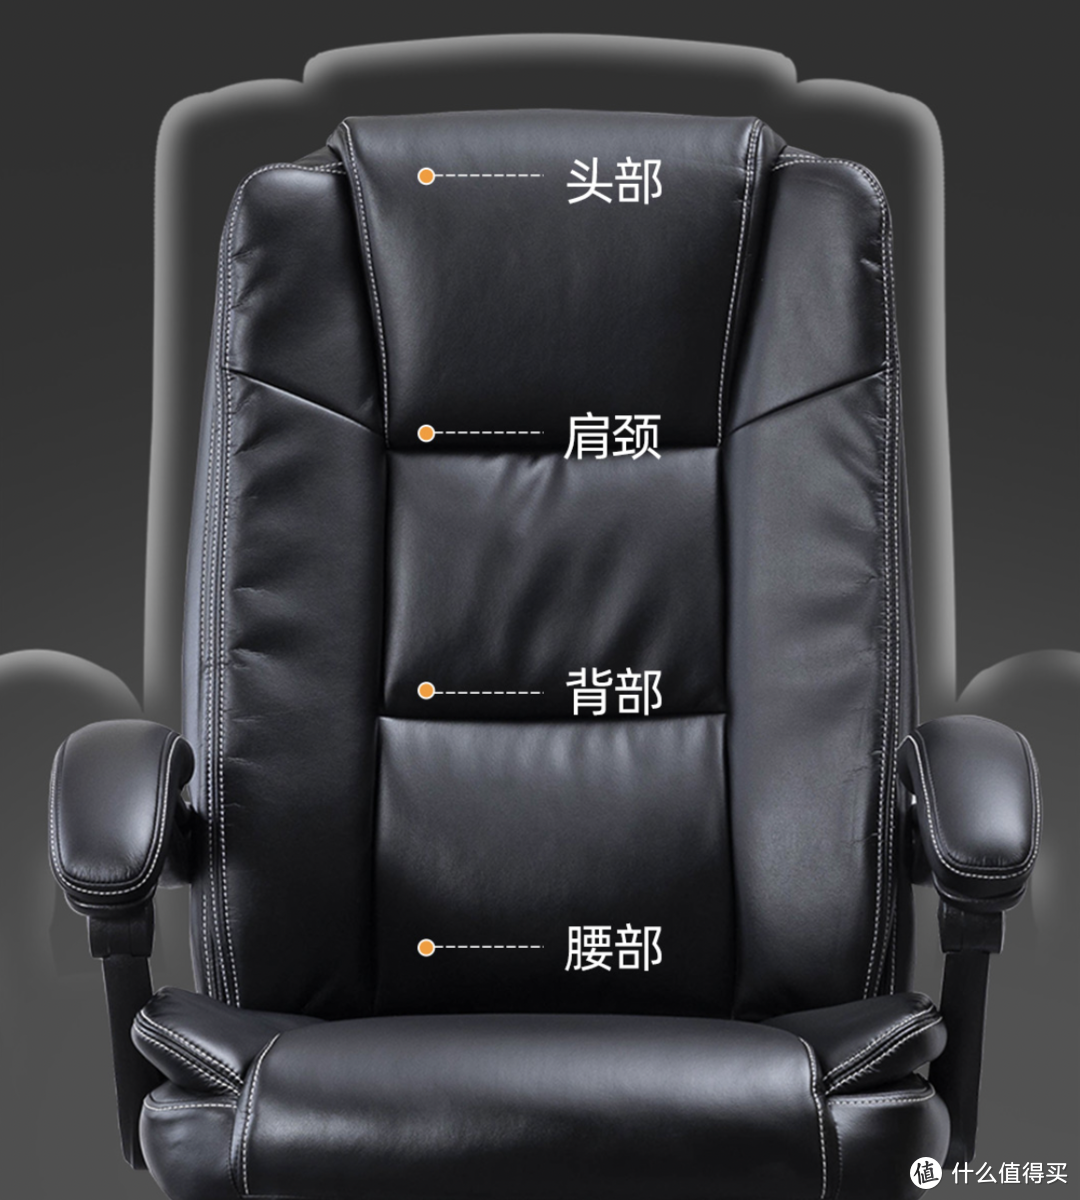 恒林上新家用老板椅，精选上等超纤皮+155°超大仰角+国际认证气压杆+12.5cm加厚坐垫